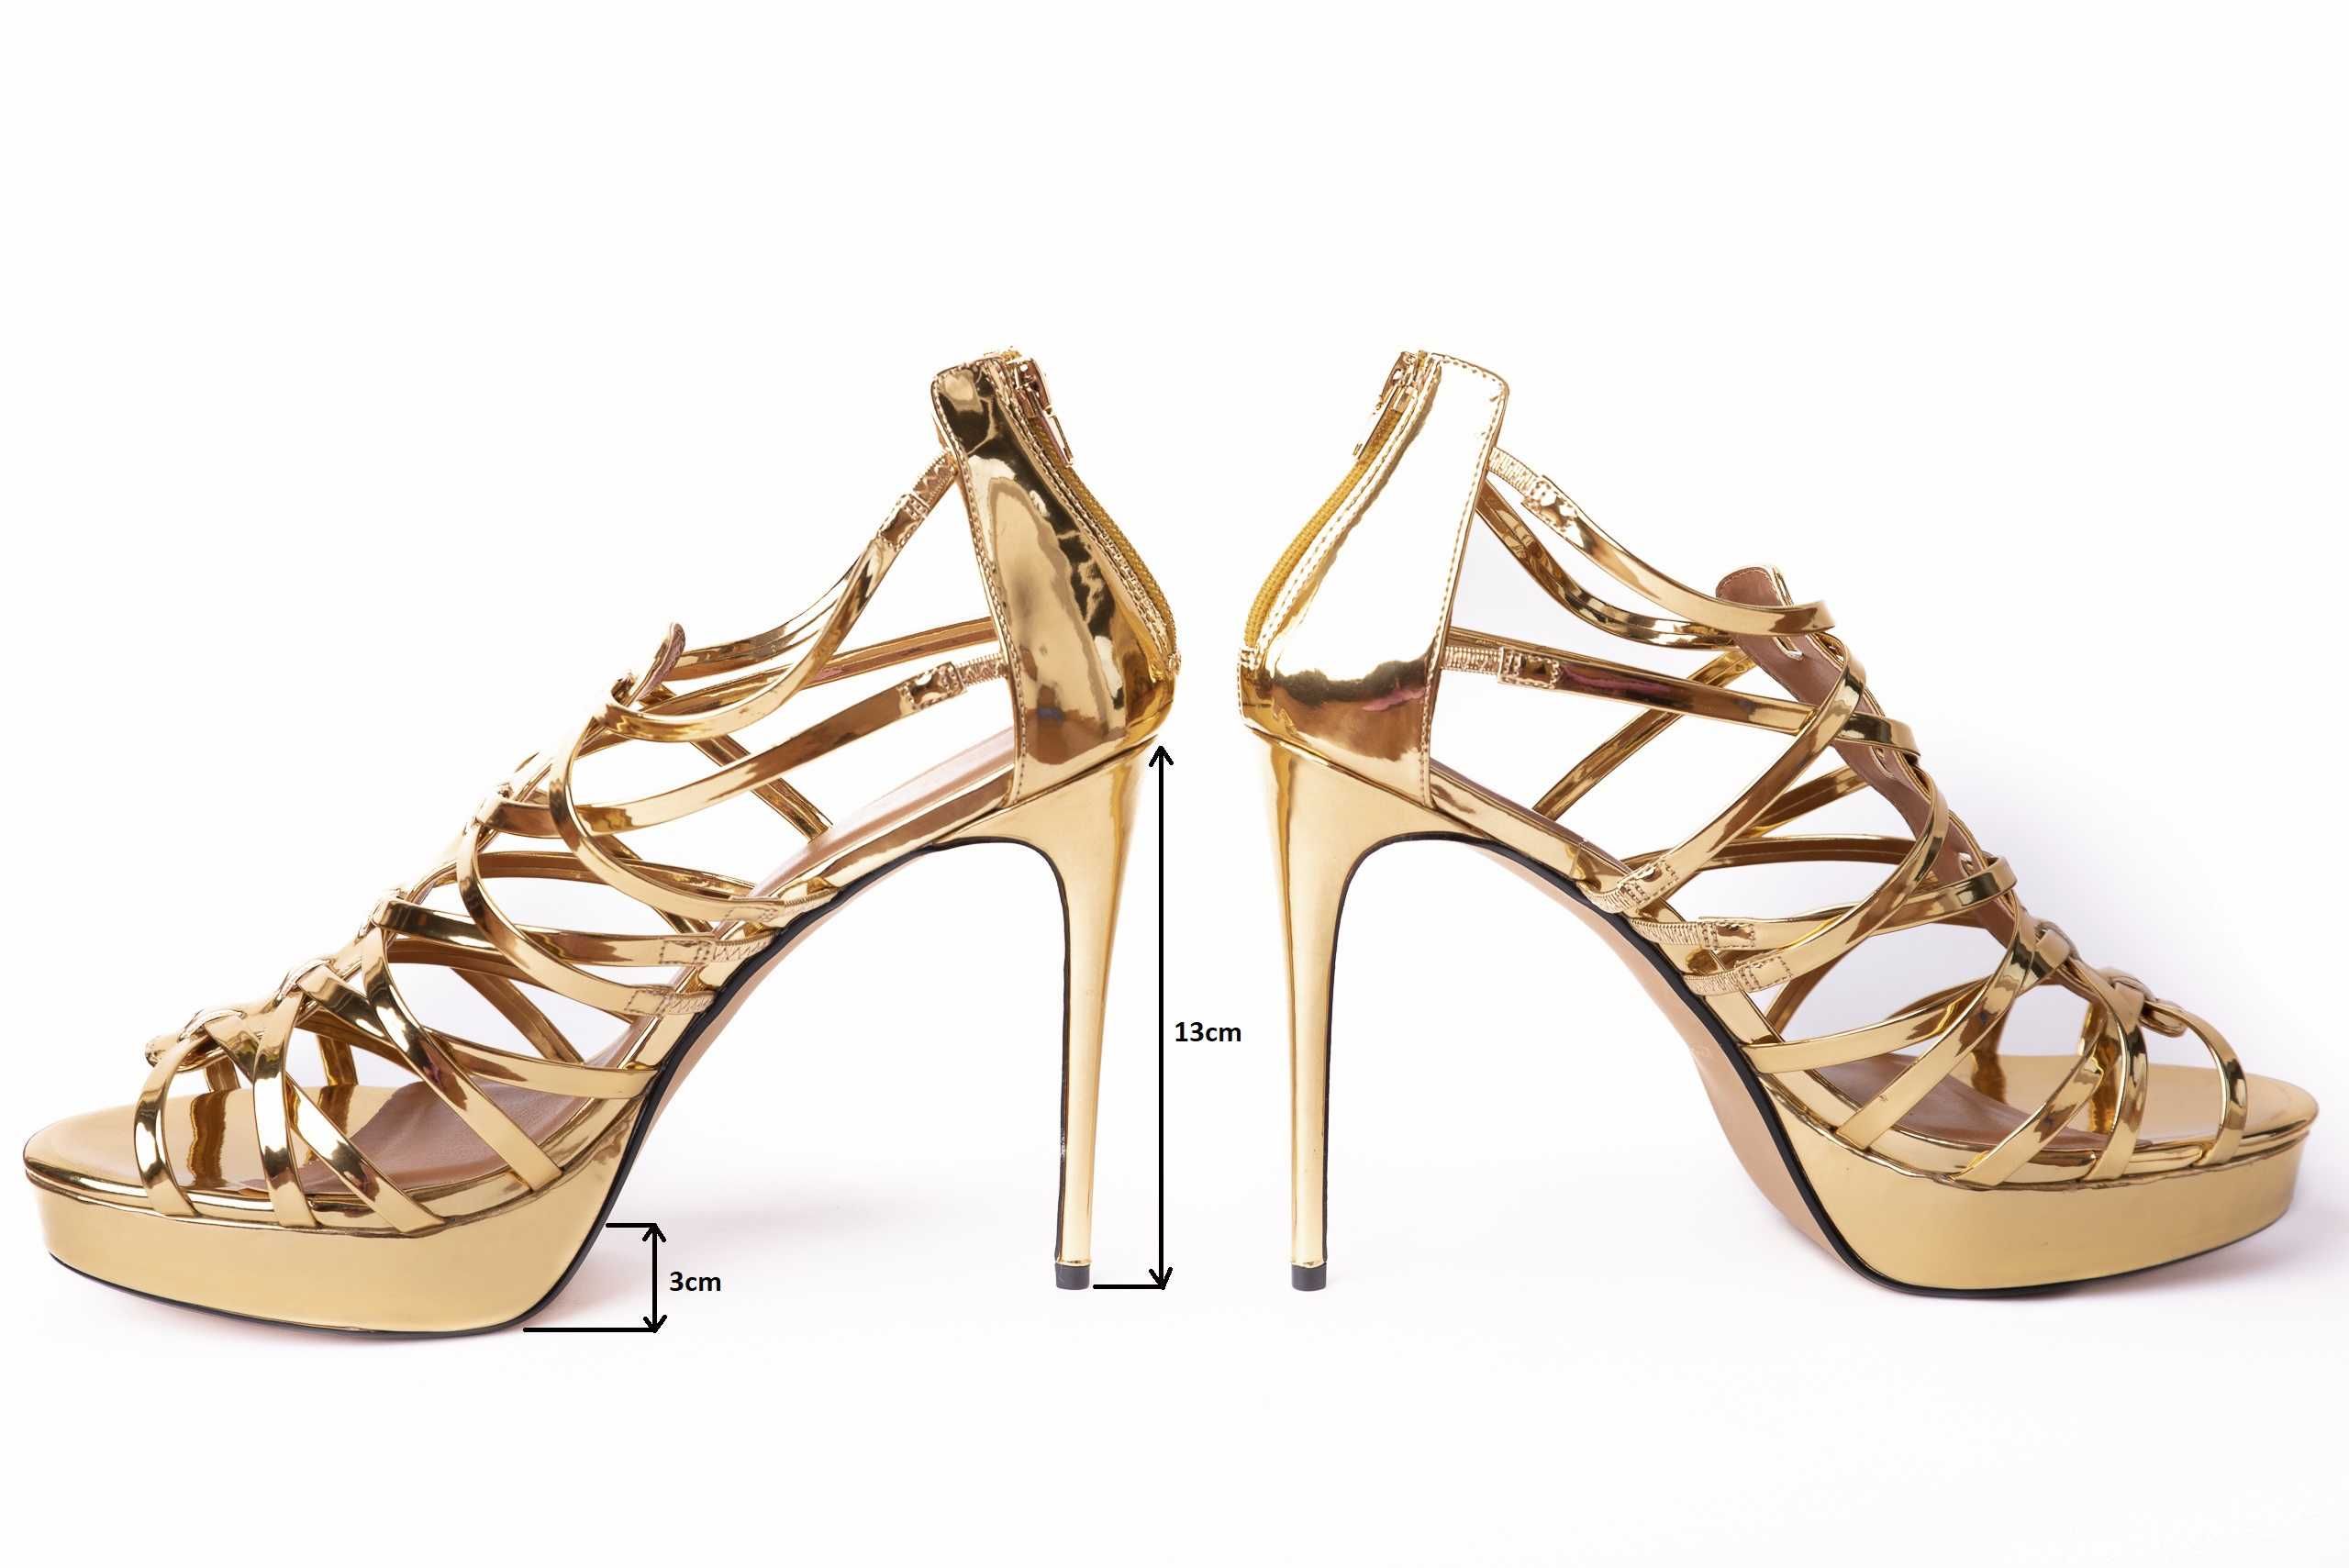 Buty złote wysokie erotyczne na obcasie szpilki 44 paski